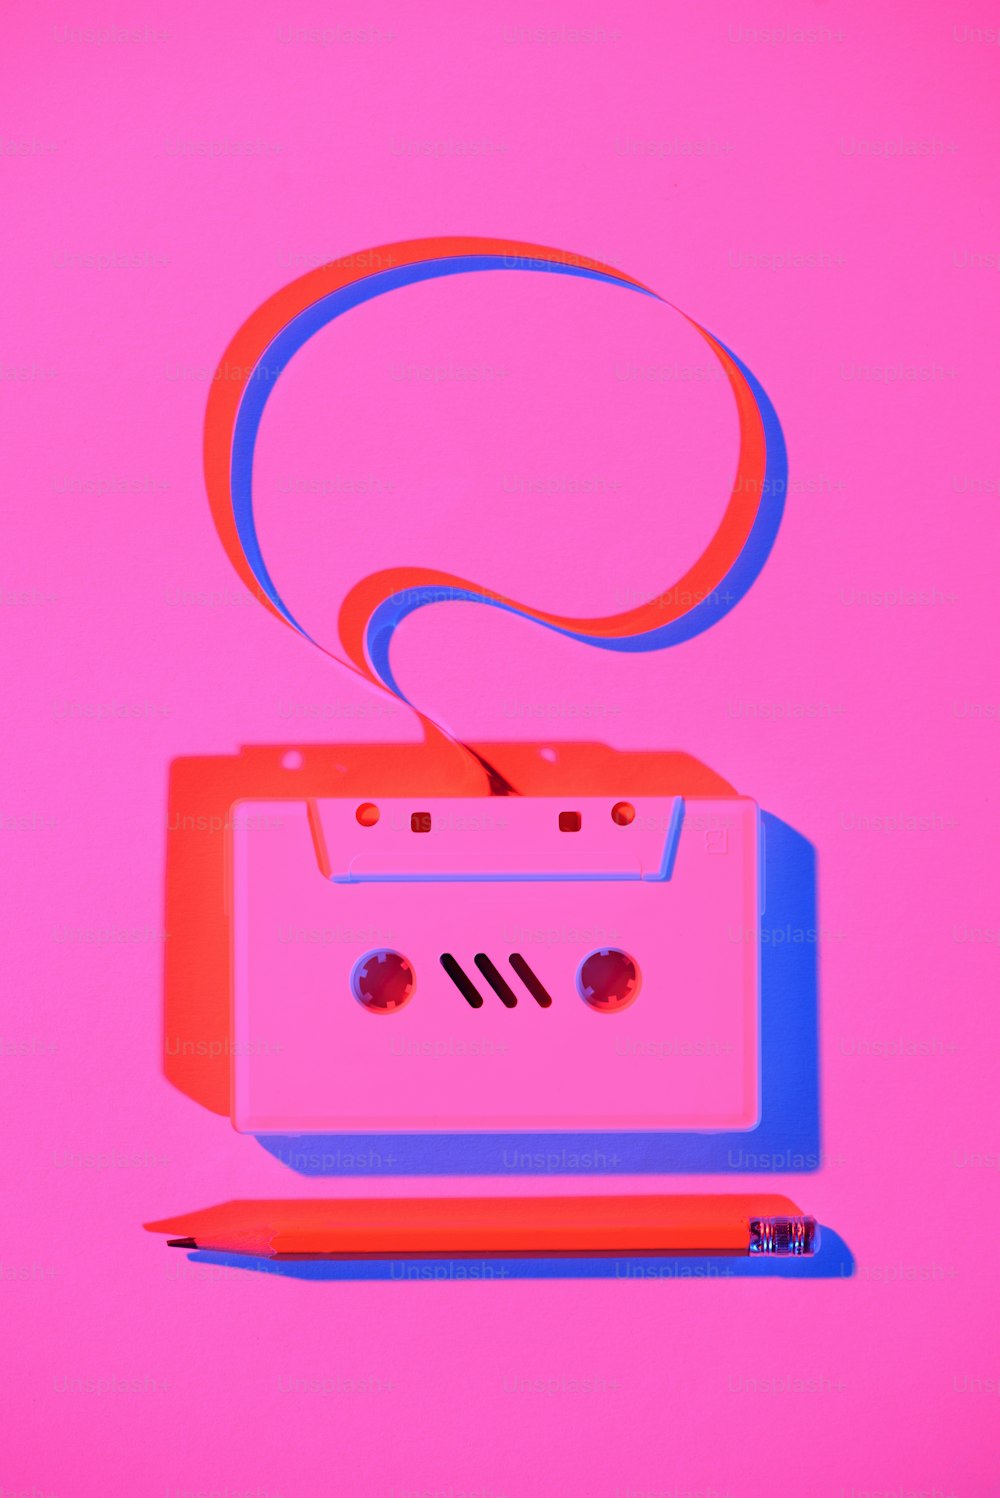 Imagen rosa tonificada de lápiz y casete de audio retro con burbuja de diálogo